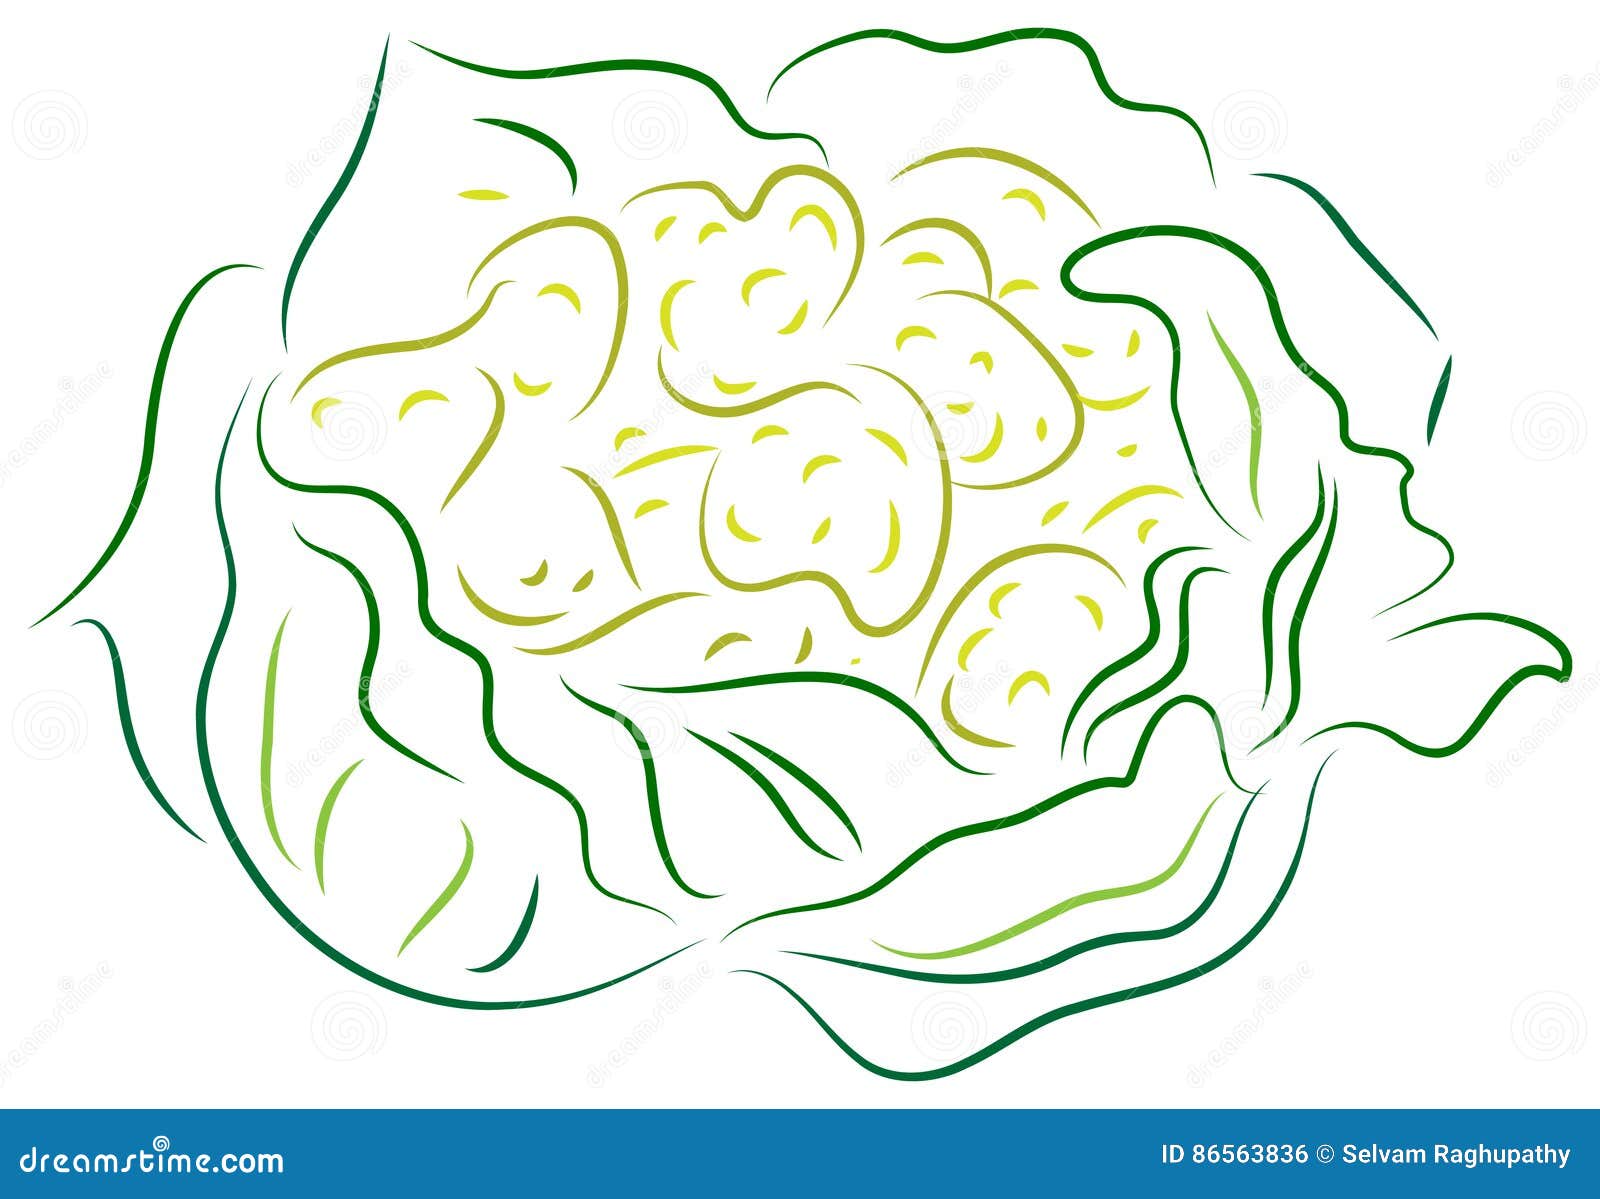 How to draw Cauliflower - YouTube